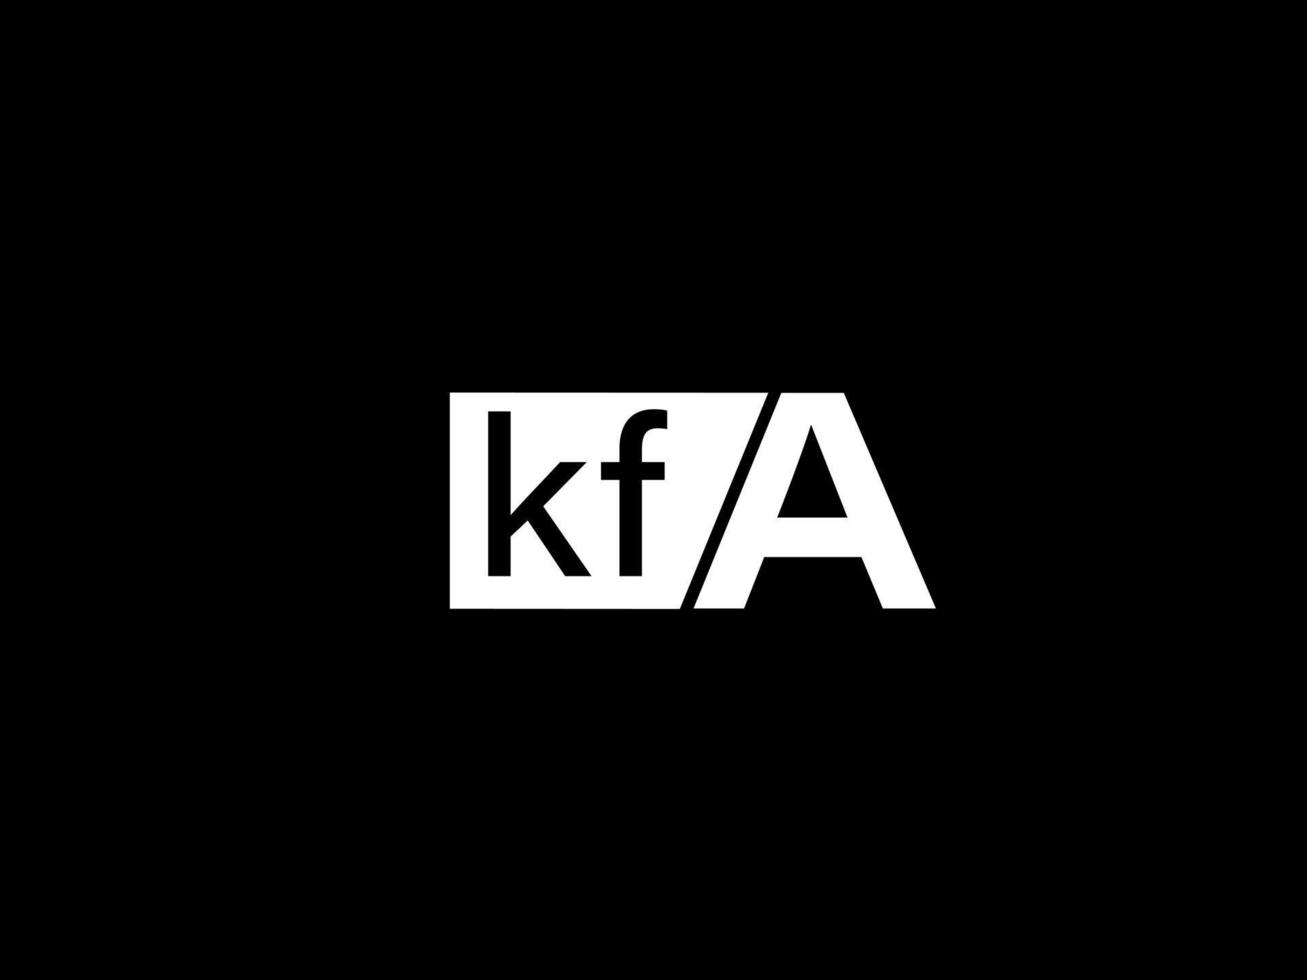 kfa-Logo und Grafikdesign Vektorgrafiken, Symbole isoliert auf schwarzem Hintergrund vektor